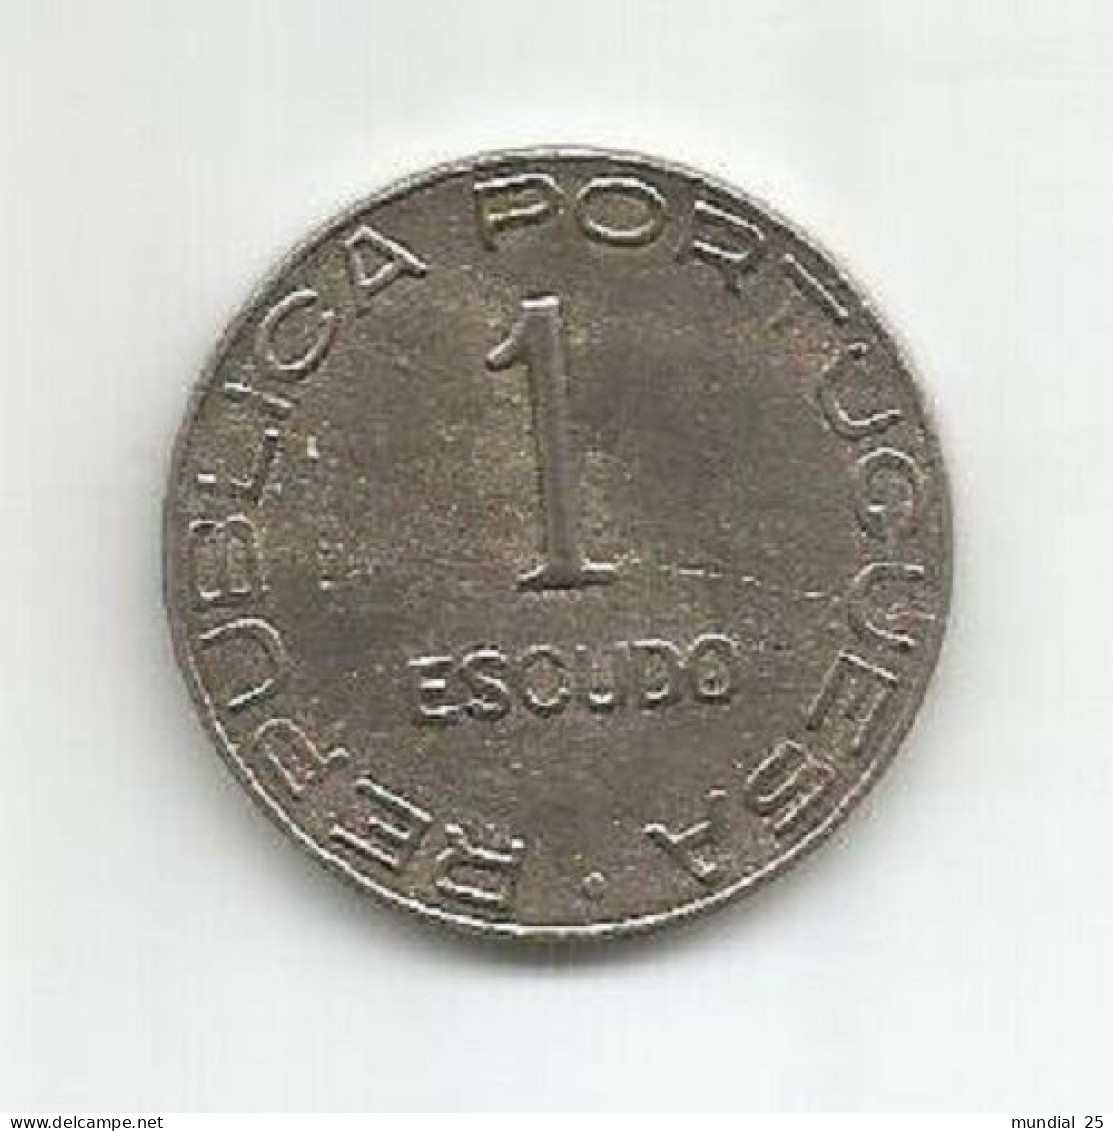 SAO TOME AND PRINCIPE PORTUGAL 1$00 ESCUDO 1939 - Sao Tome And Principe